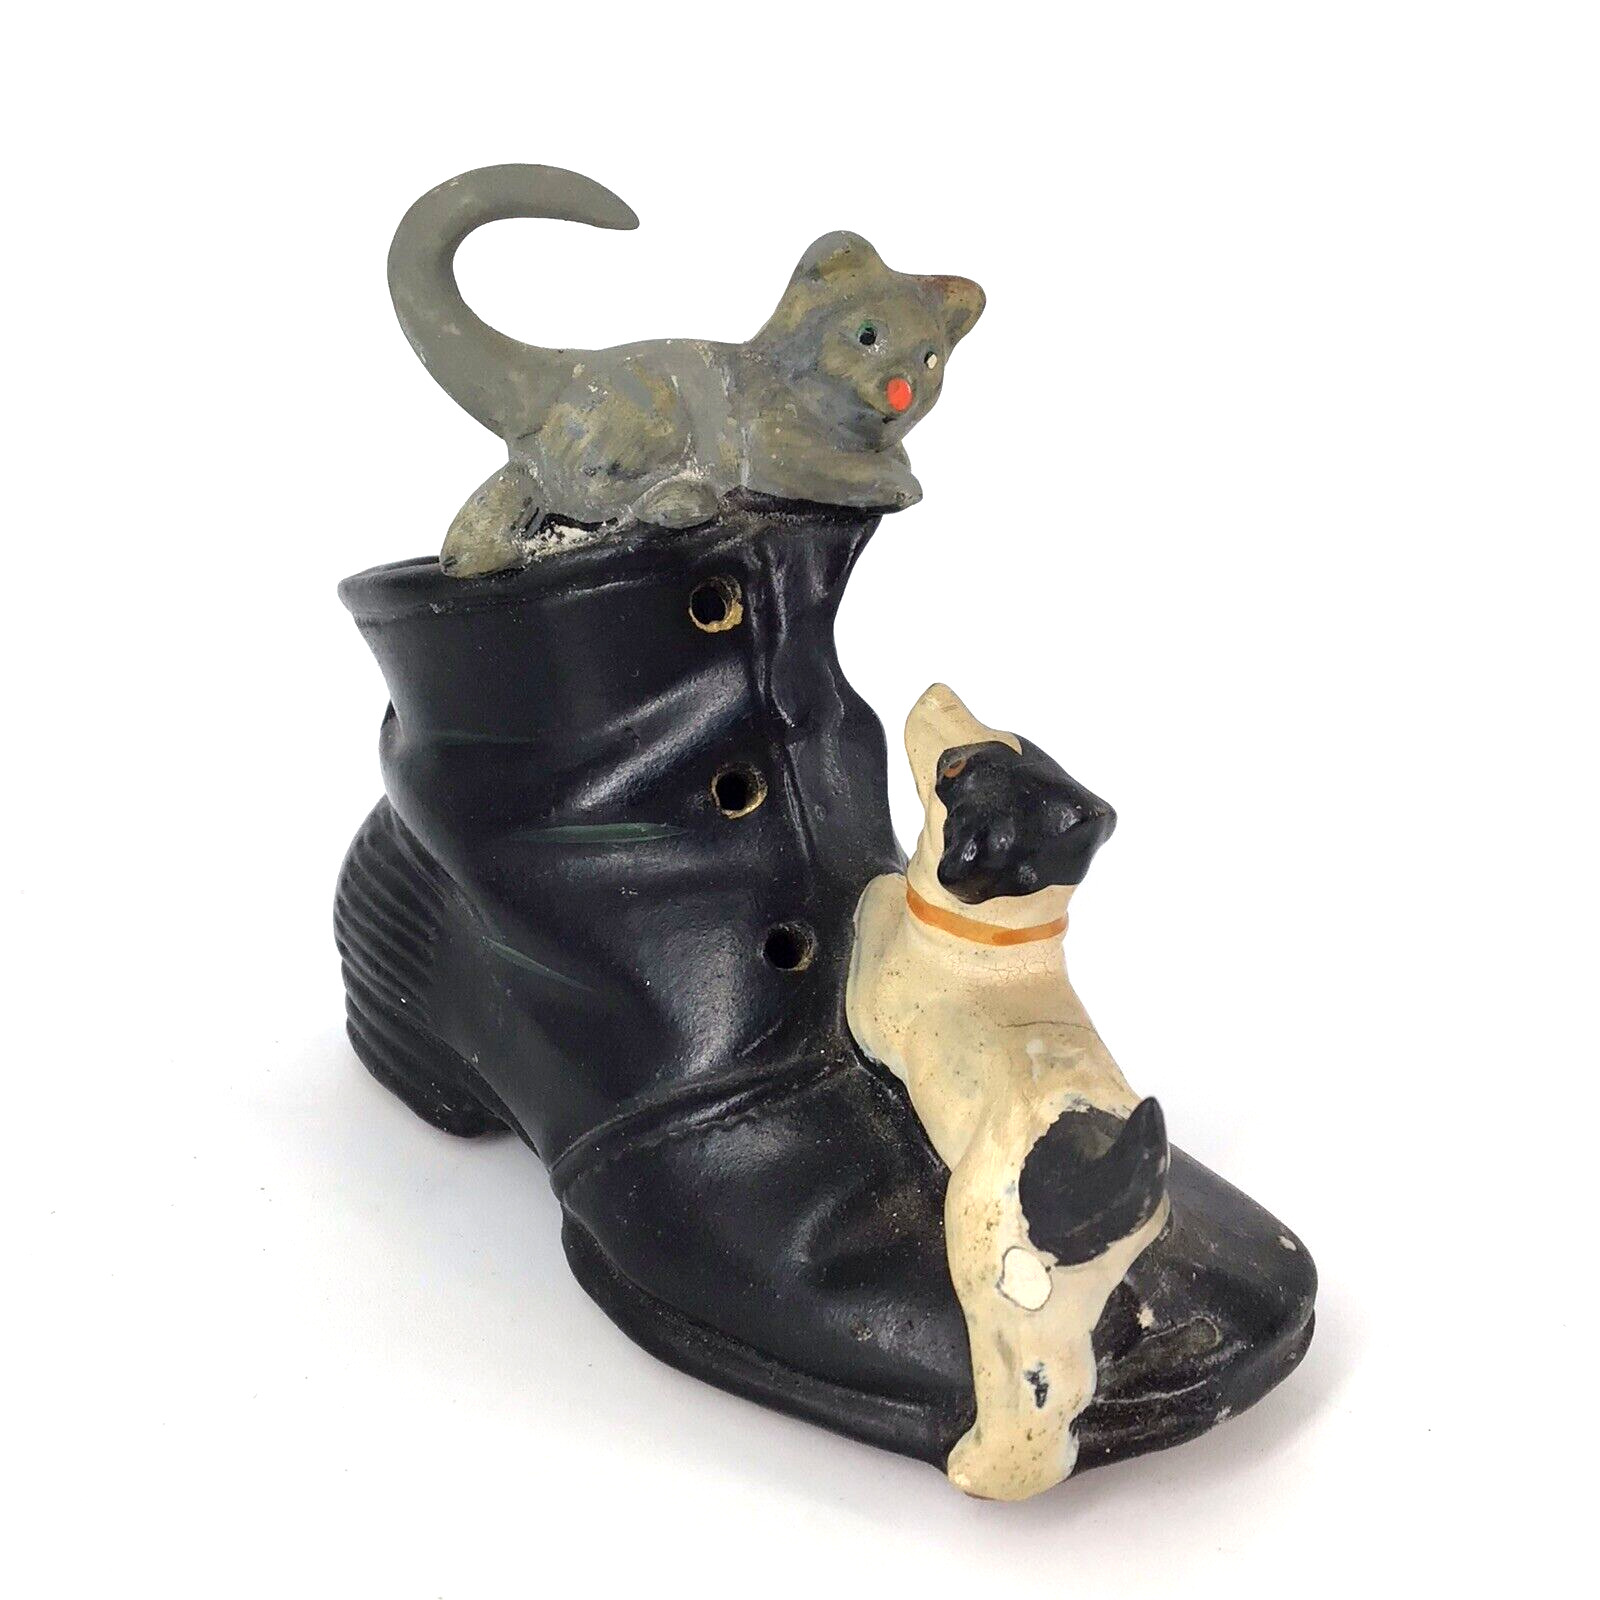 vtg ceramic shoe BOOT w/ Dog and Cat figurine Niagara Falls Canada souvenir